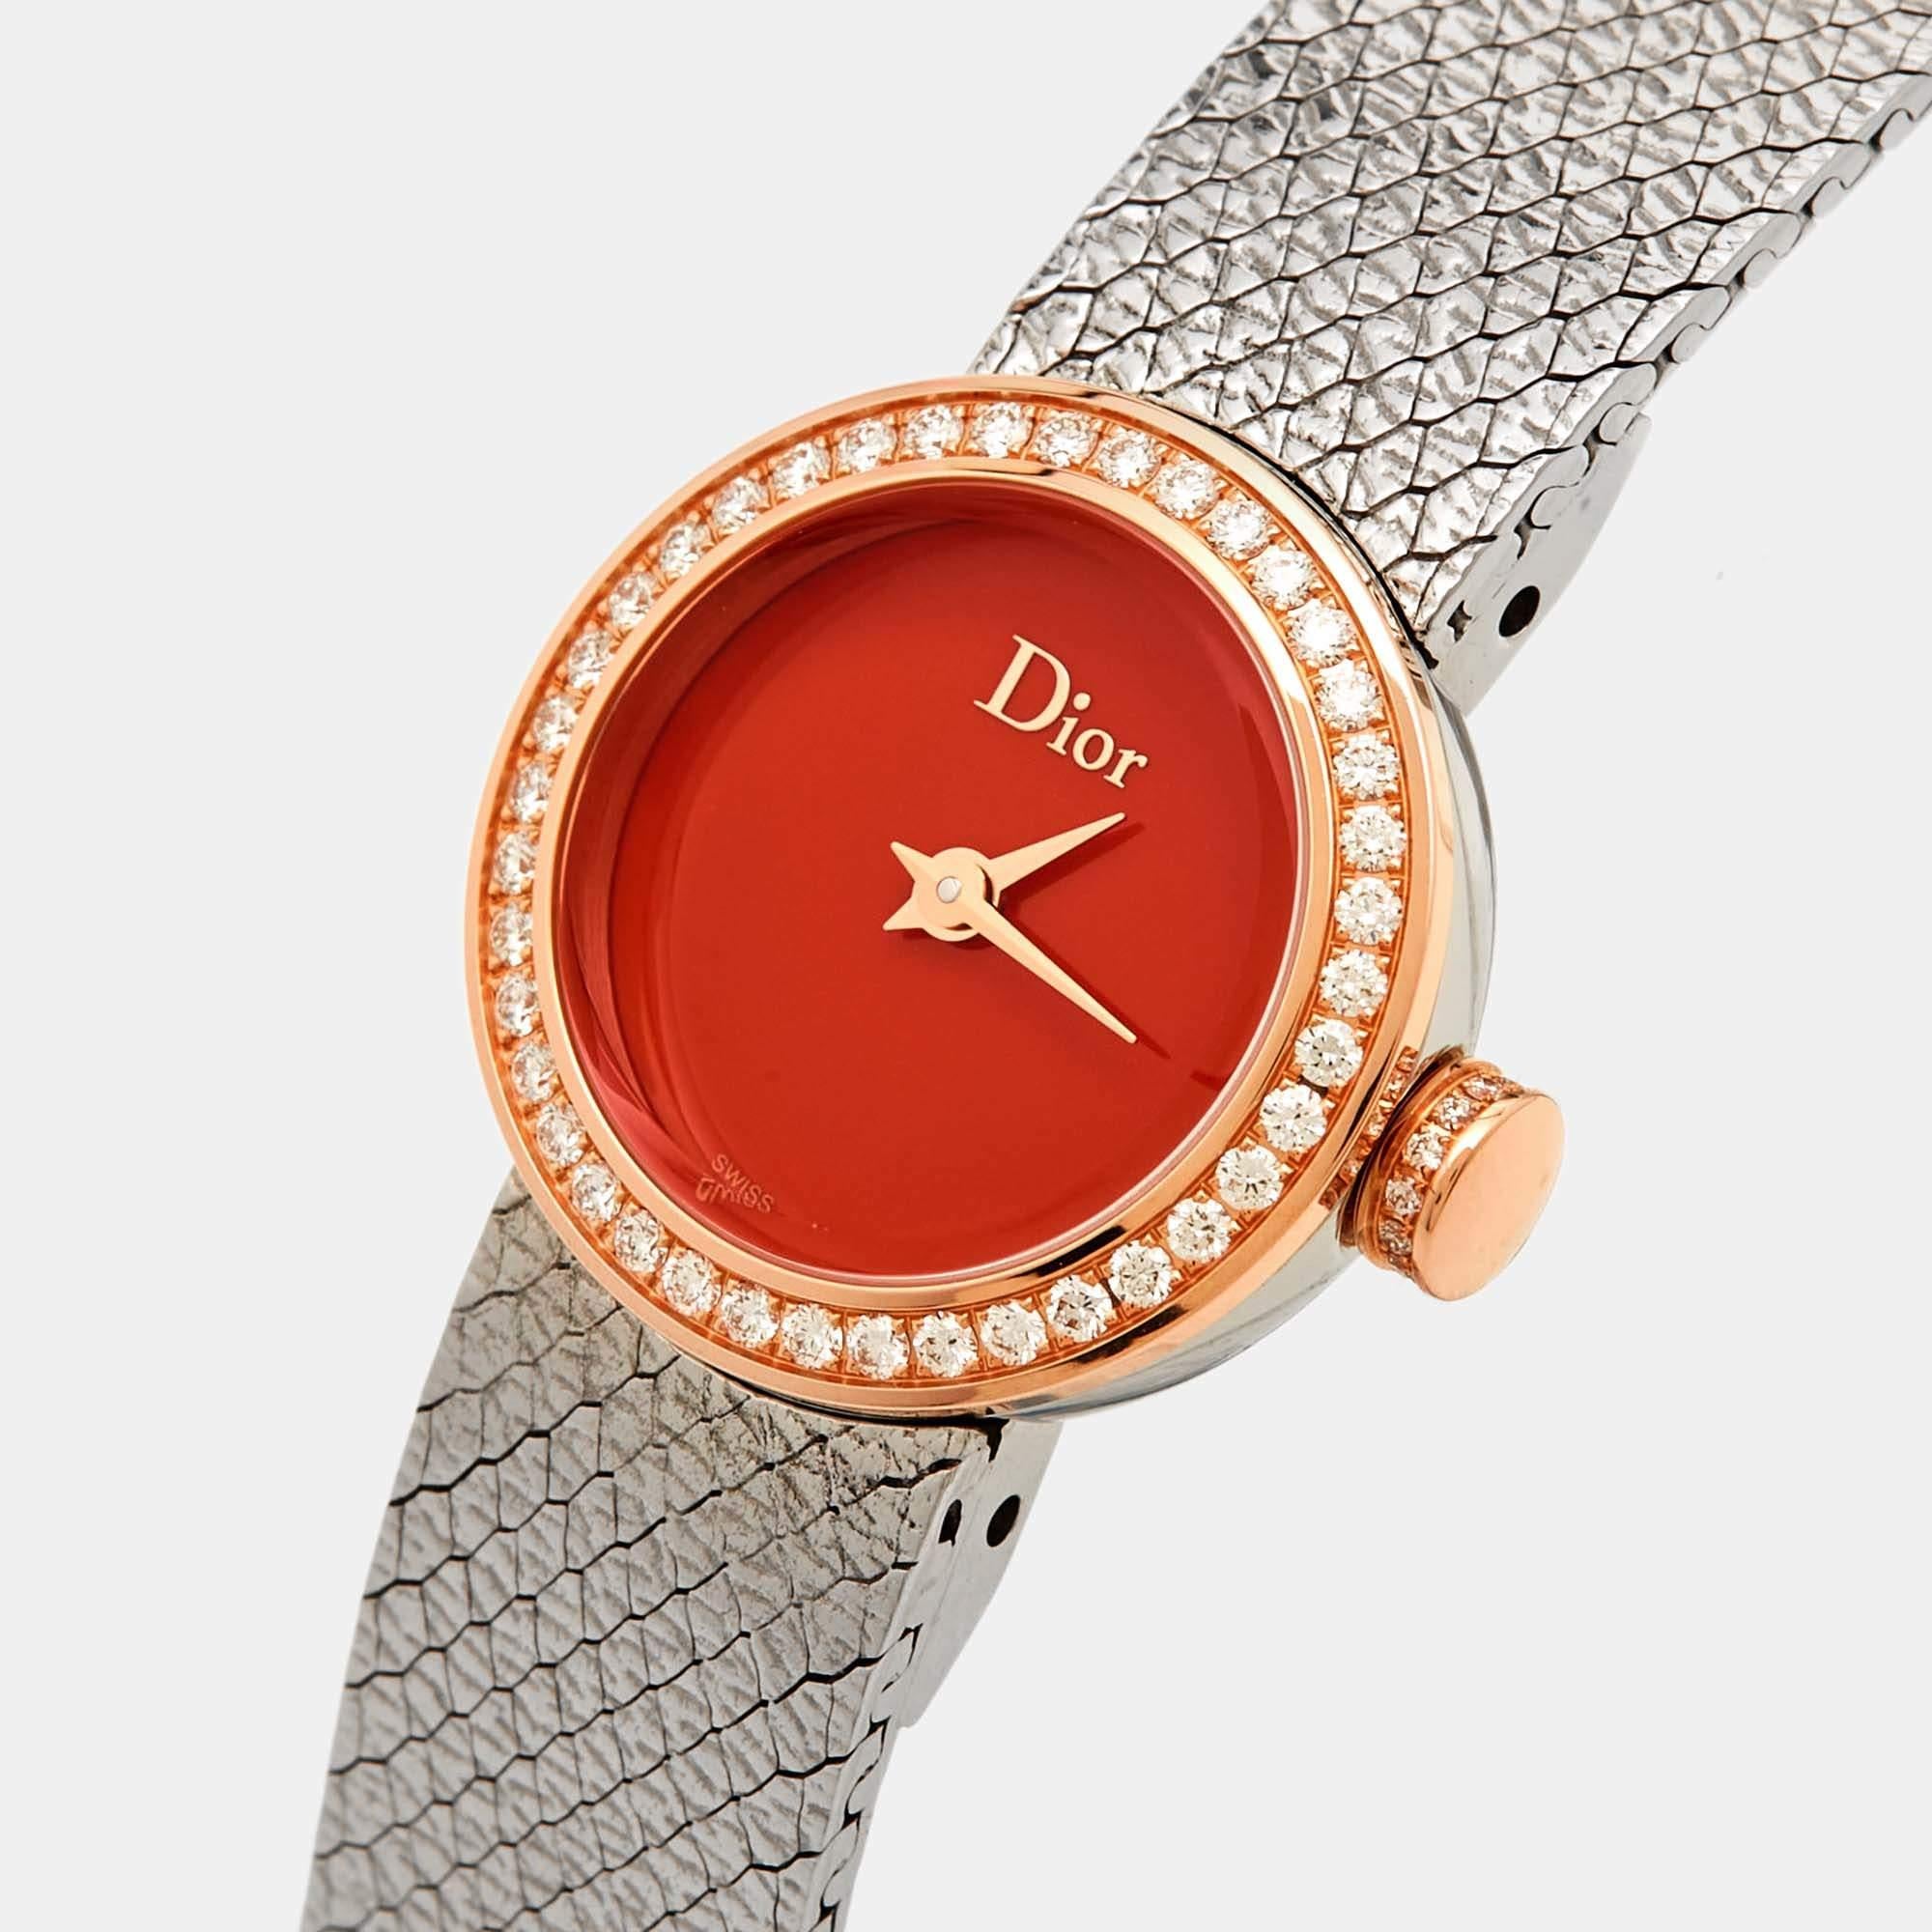 Die Armbanduhr Dior La De Dior CD04012X1001 ist ein luxuriöser Zeitmesser. Sie besteht aus einer eleganten Mischung aus 18 Karat Roségold und Edelstahl und ist mit funkelnden Diamanten verziert. Das Design der Uhr ist eine harmonische Verschmelzung